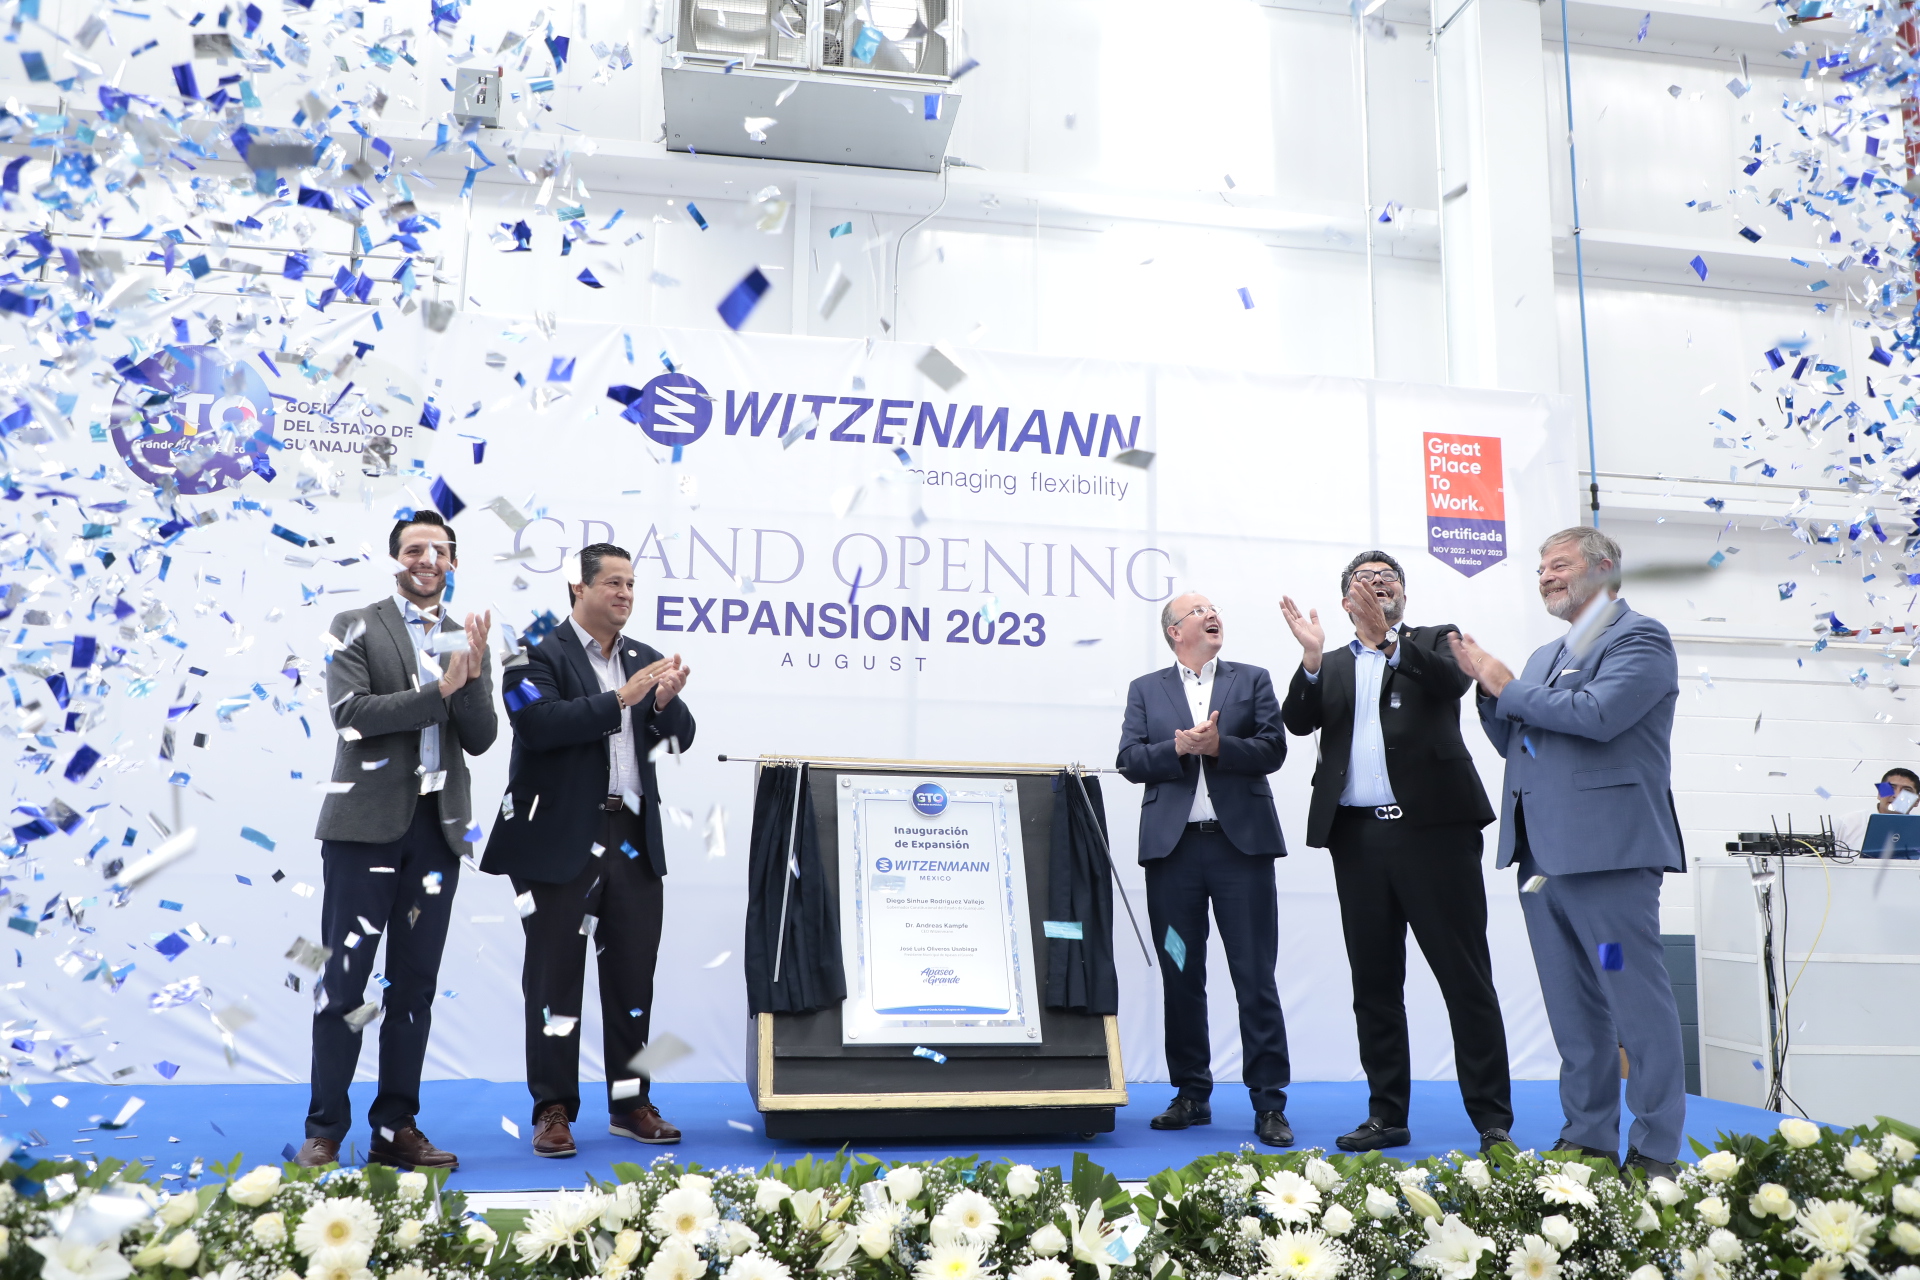 La empresa alemana Witzenman invierte 14 mdd en la ampliación de su fábrica en Apaseo el Grande